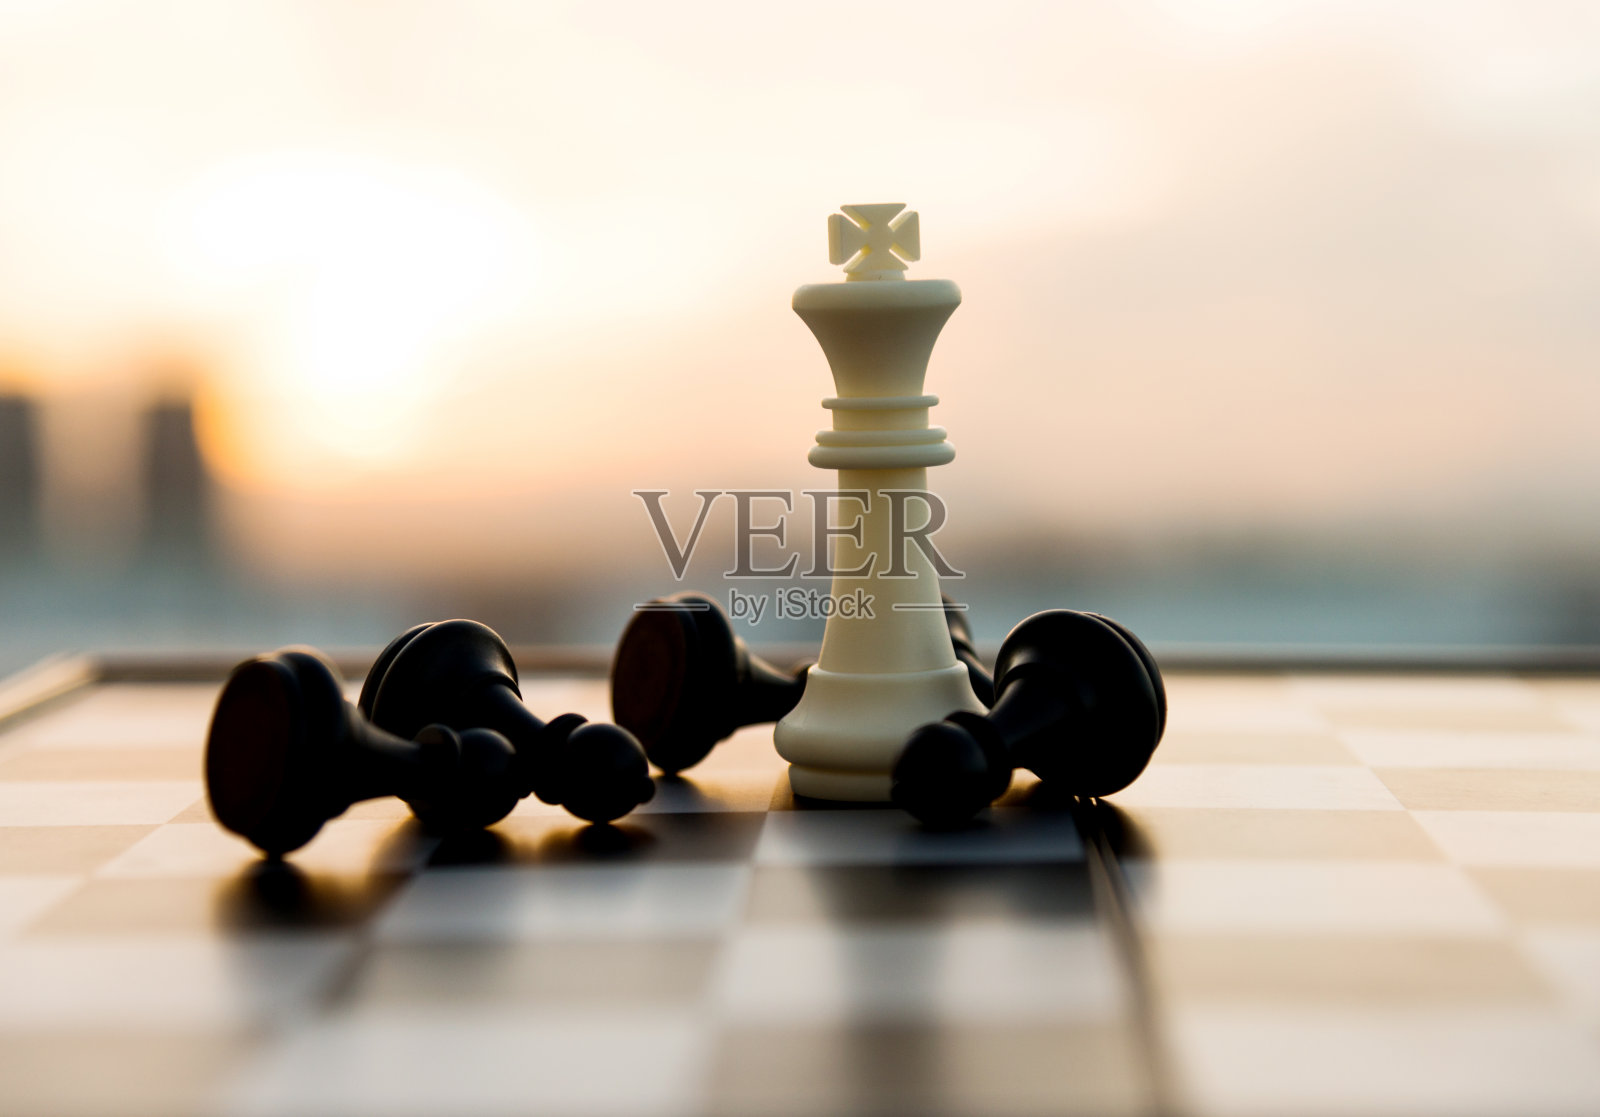 国际象棋的游戏照片摄影图片